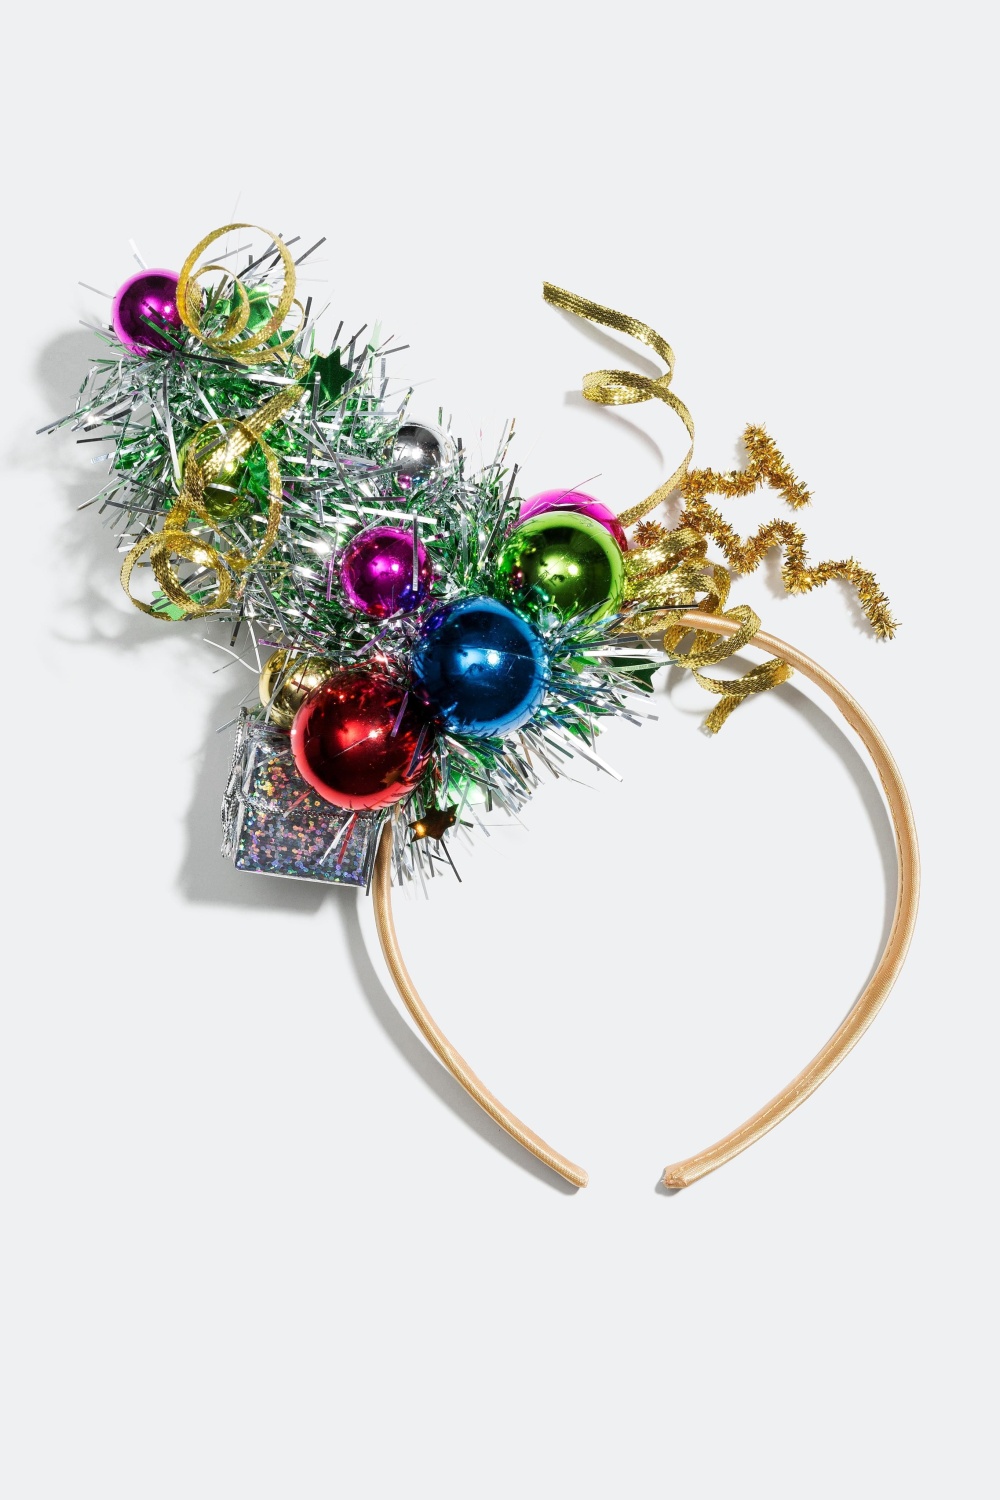 Hårbøjle med julekugler og glitter i gruppen Jul / Christmas Collection hos Glitter (321619)